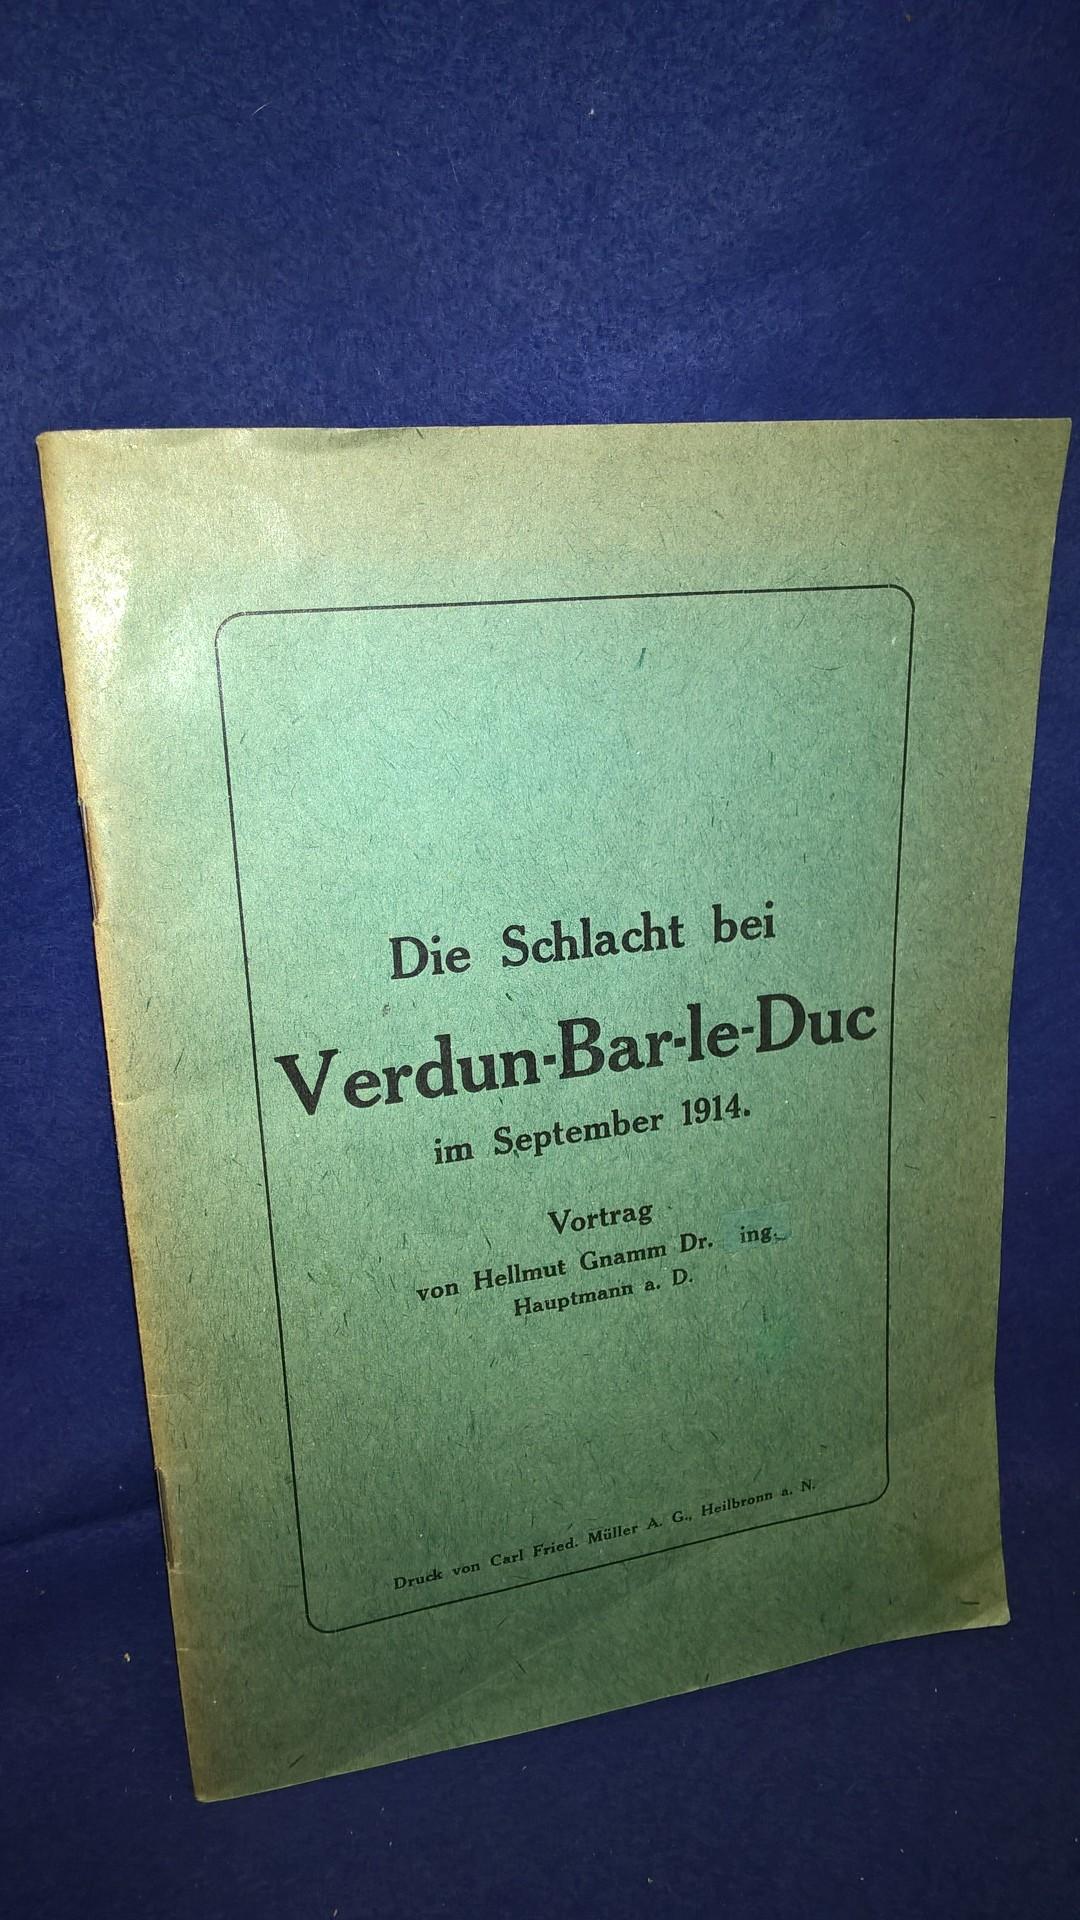 Die Schlacht bei Verdun - Bar le Duc im September 1914. Vortrag gehalten bei der Jahreshauptversammlung der ehemaligen Offiziere, Sanitätsoffiziere u. Beamten des Württembergisch. Füs. Reg. 122 in Heilbronn a. N. am 6. Okt. 1923